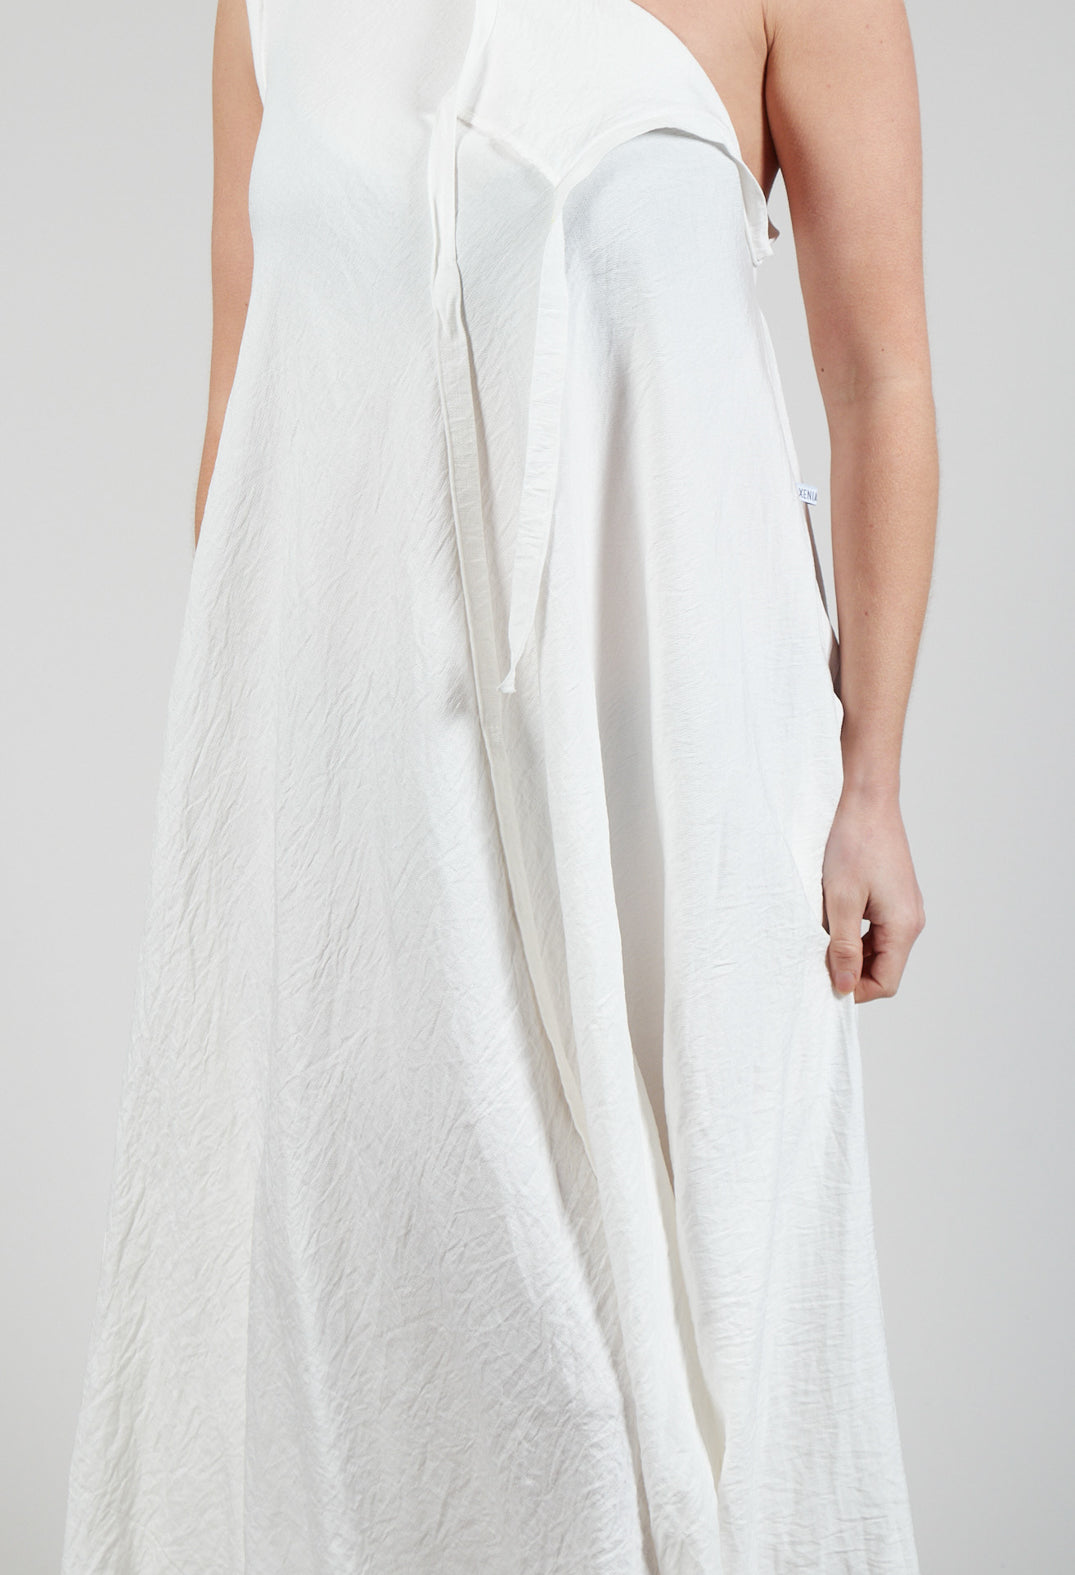 ELOT Dress in White